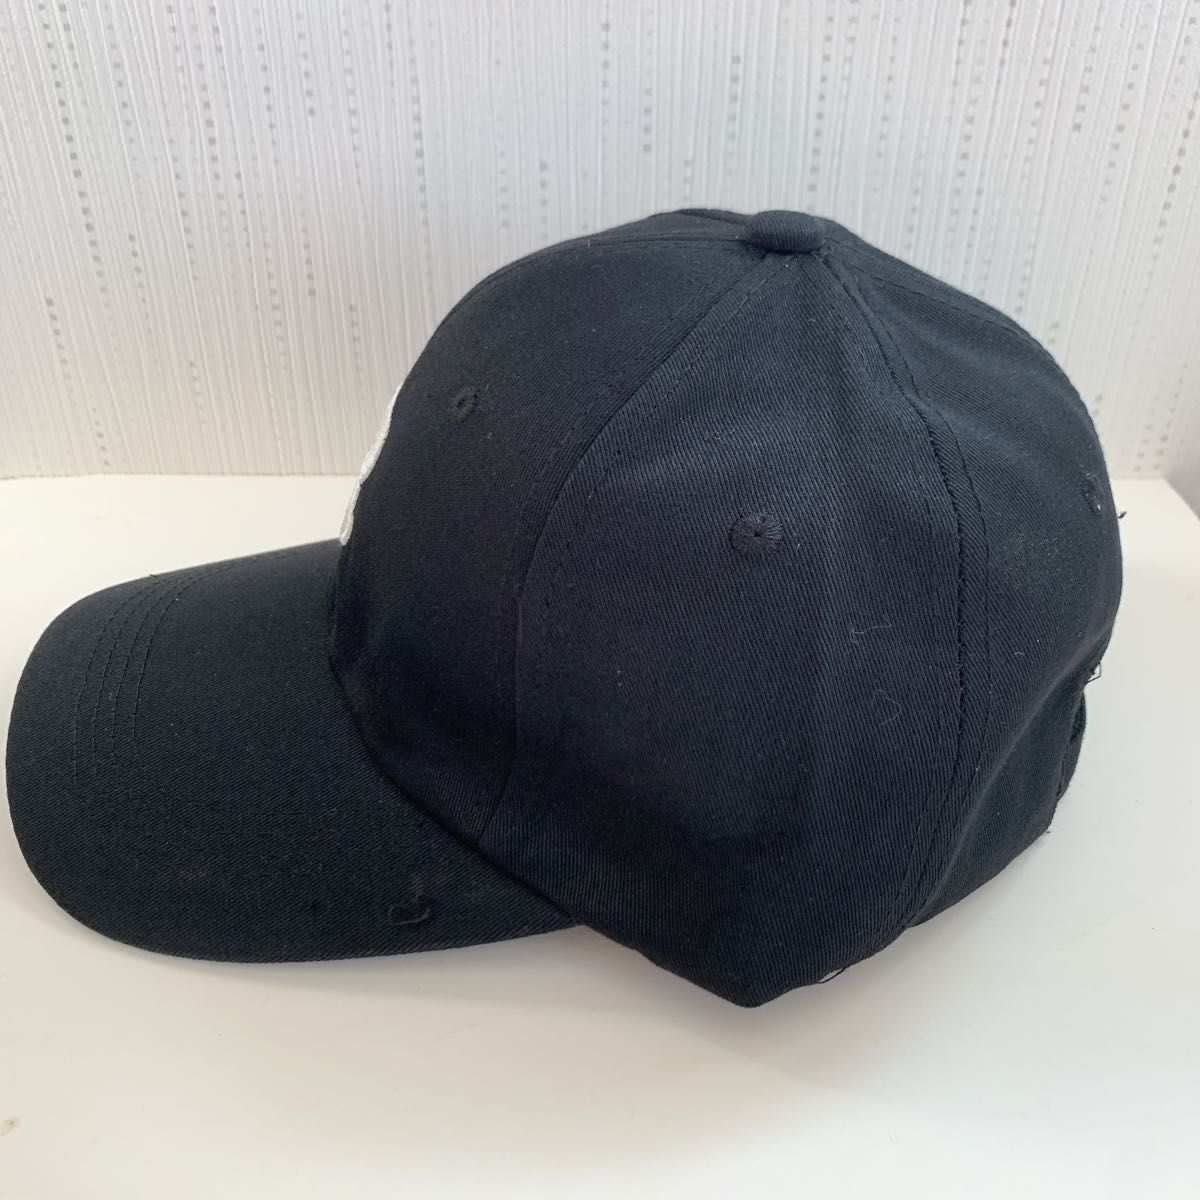 帽子 ベースボールキャップ 野球帽 Rマーク メンズ レディース シンプル ブラック UVカット 紫外線対策 春夏秋冬 新品未使用